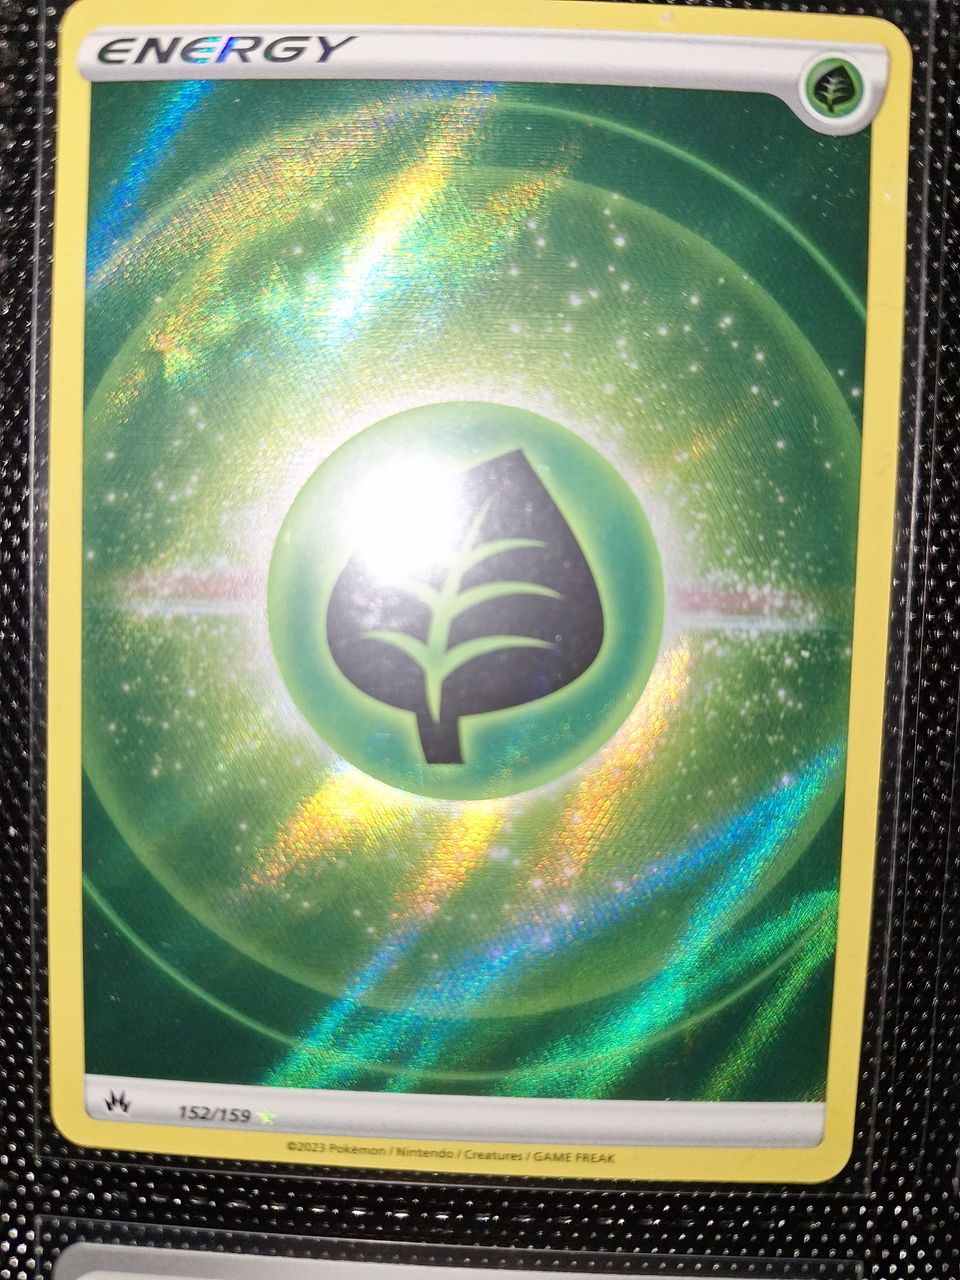 Pokemon Energy 152/159